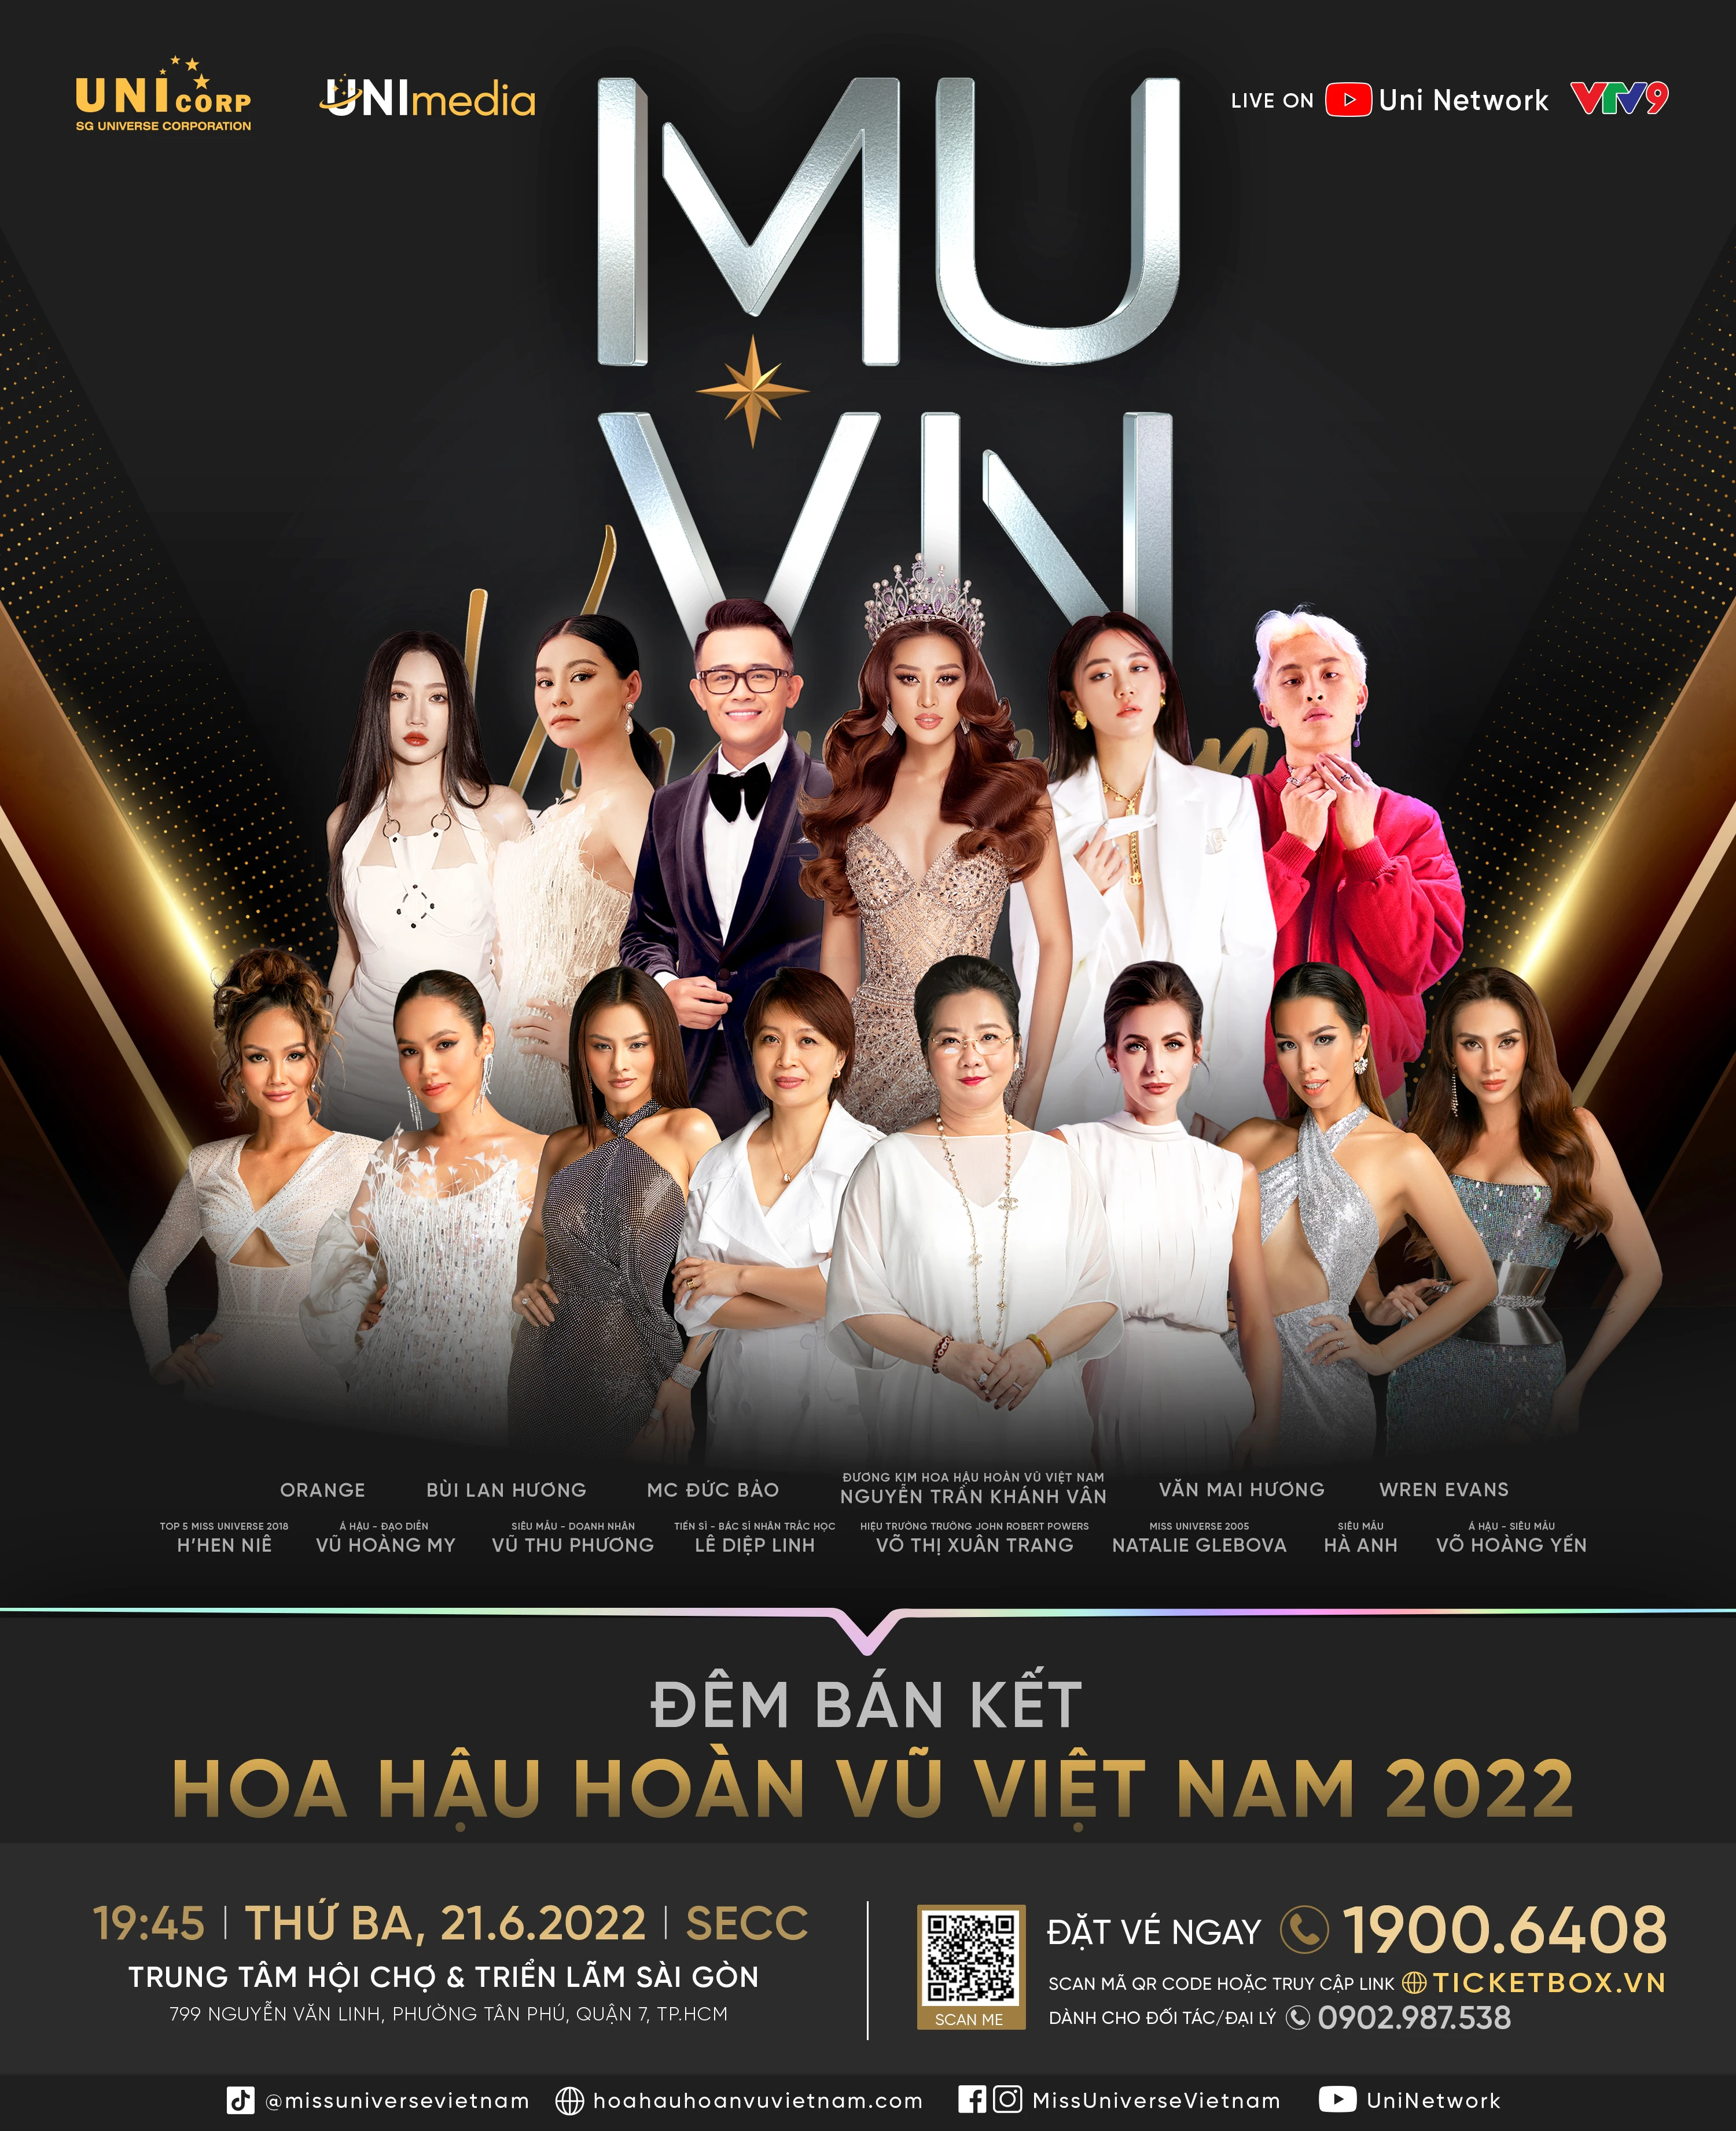 Sự kiện đêm Bán kết Hoa hậu Hoàn vũ Việt Nam 2022 - hứa hẹn màn tranh tài đẳng cấp